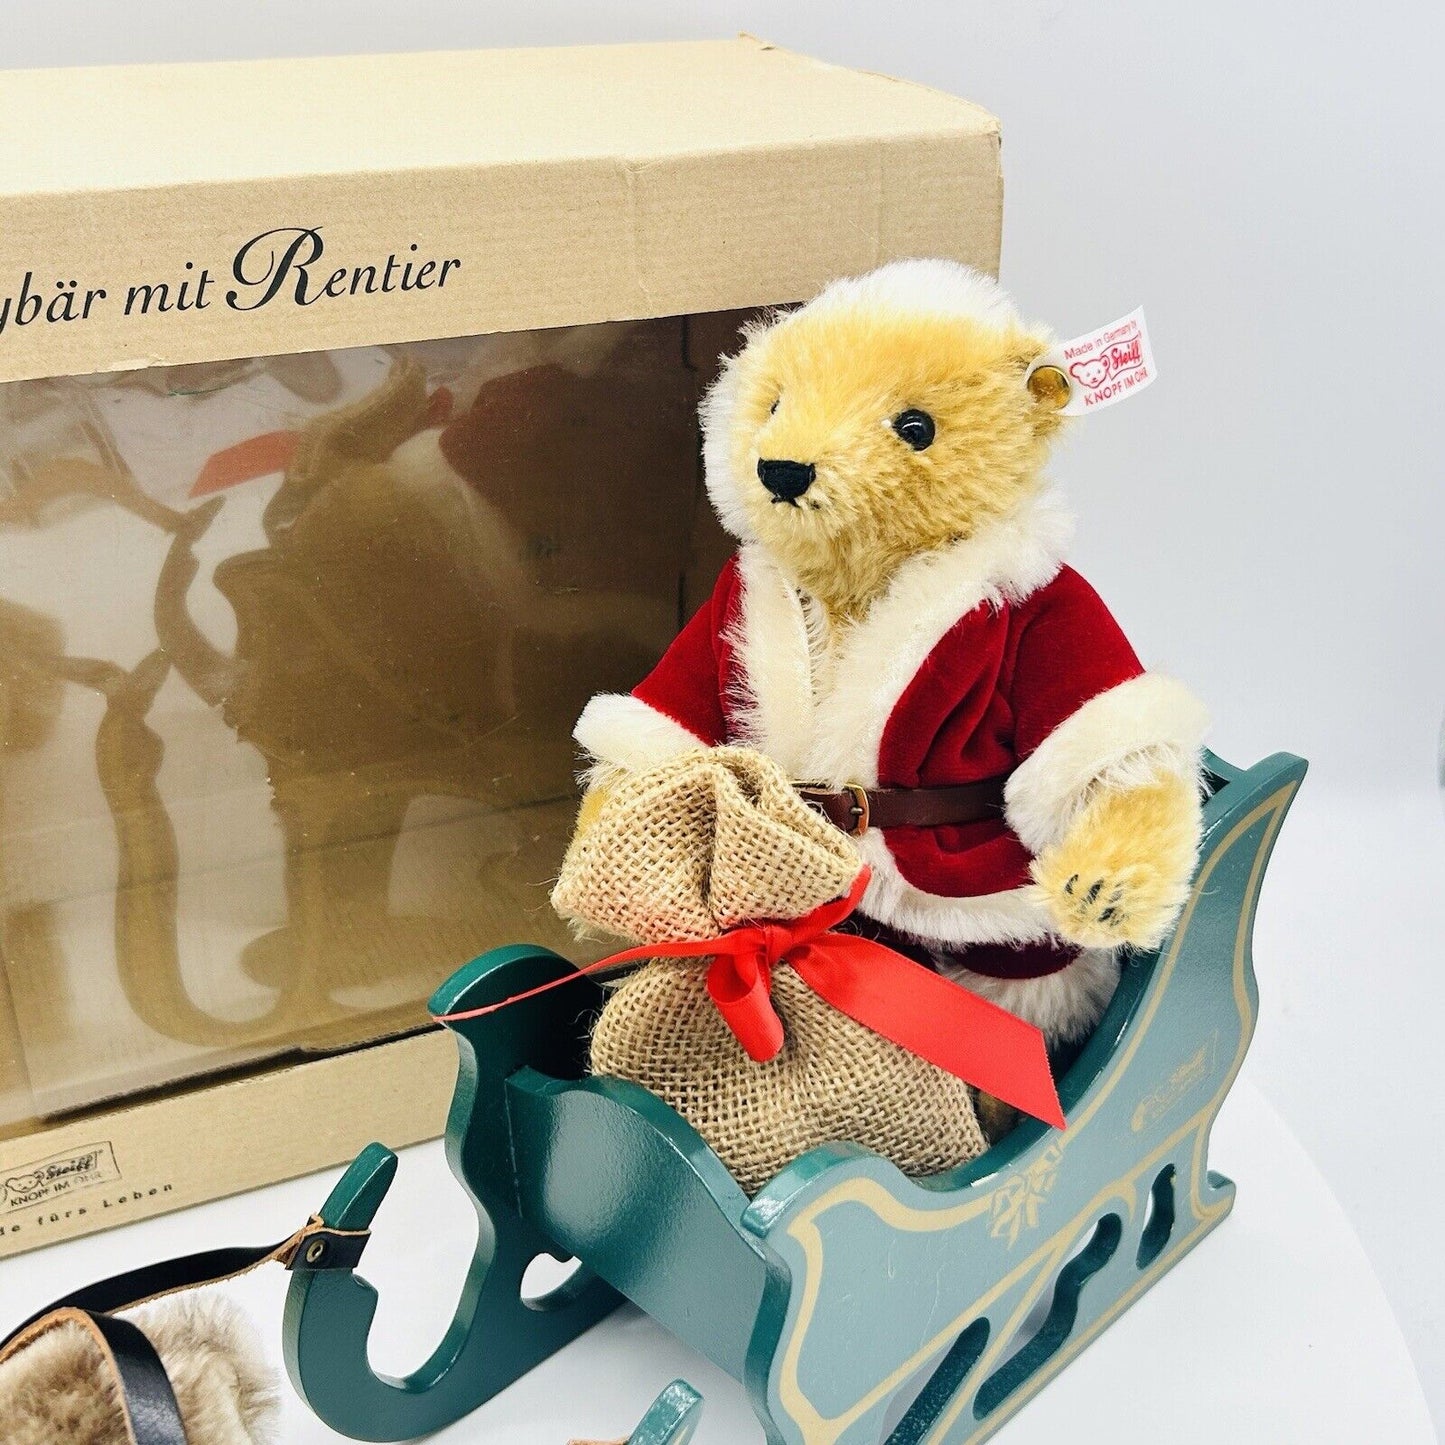 Steiff 670565 Teddybär Weihnachtsmann mit Rentier limitiert 2500 aus 2000